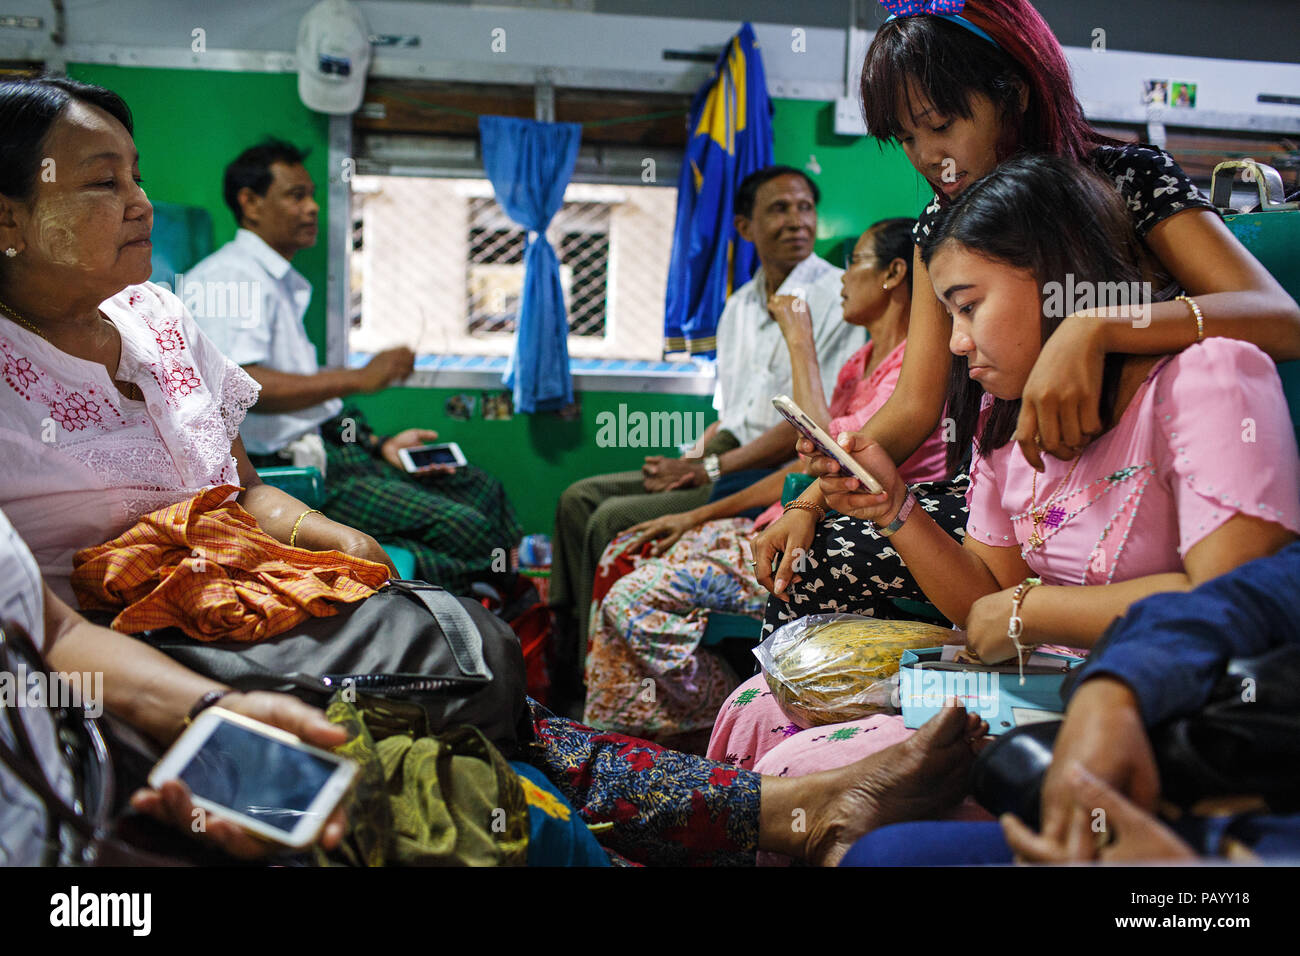 Los pasajeros de un tren en la estación de ferrocarril de Mandalay, Myanmar Foto de stock